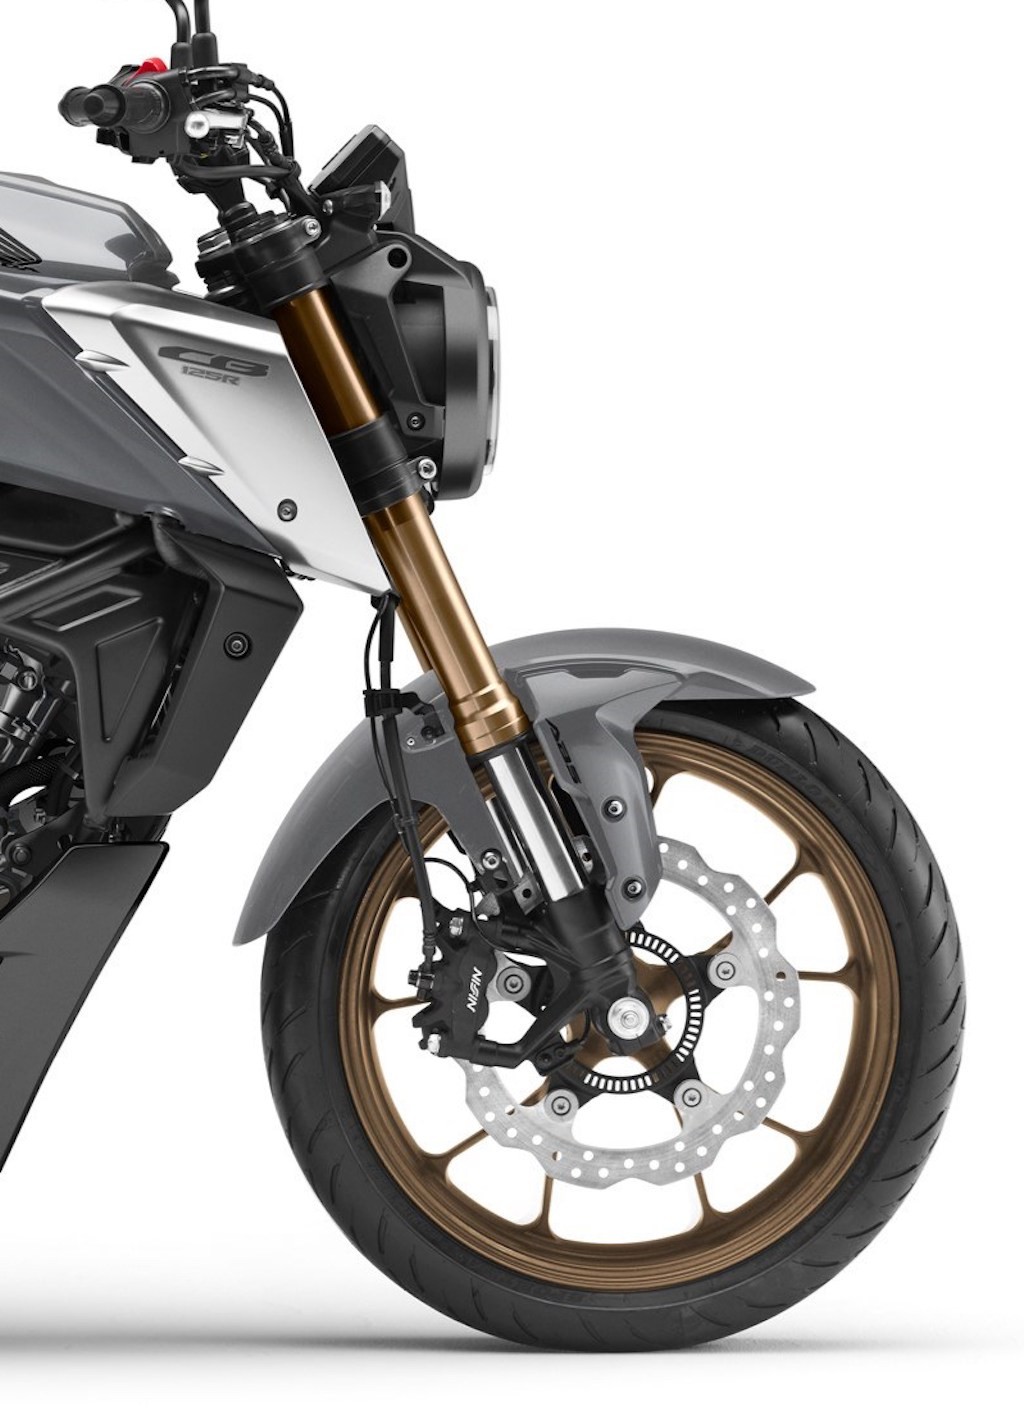 Naked bike Honda CB125R 2021 nâng cấp phuộc và động cơ, liệu CB150R ở Việt Nam sẽ nối bước? ảnh 4